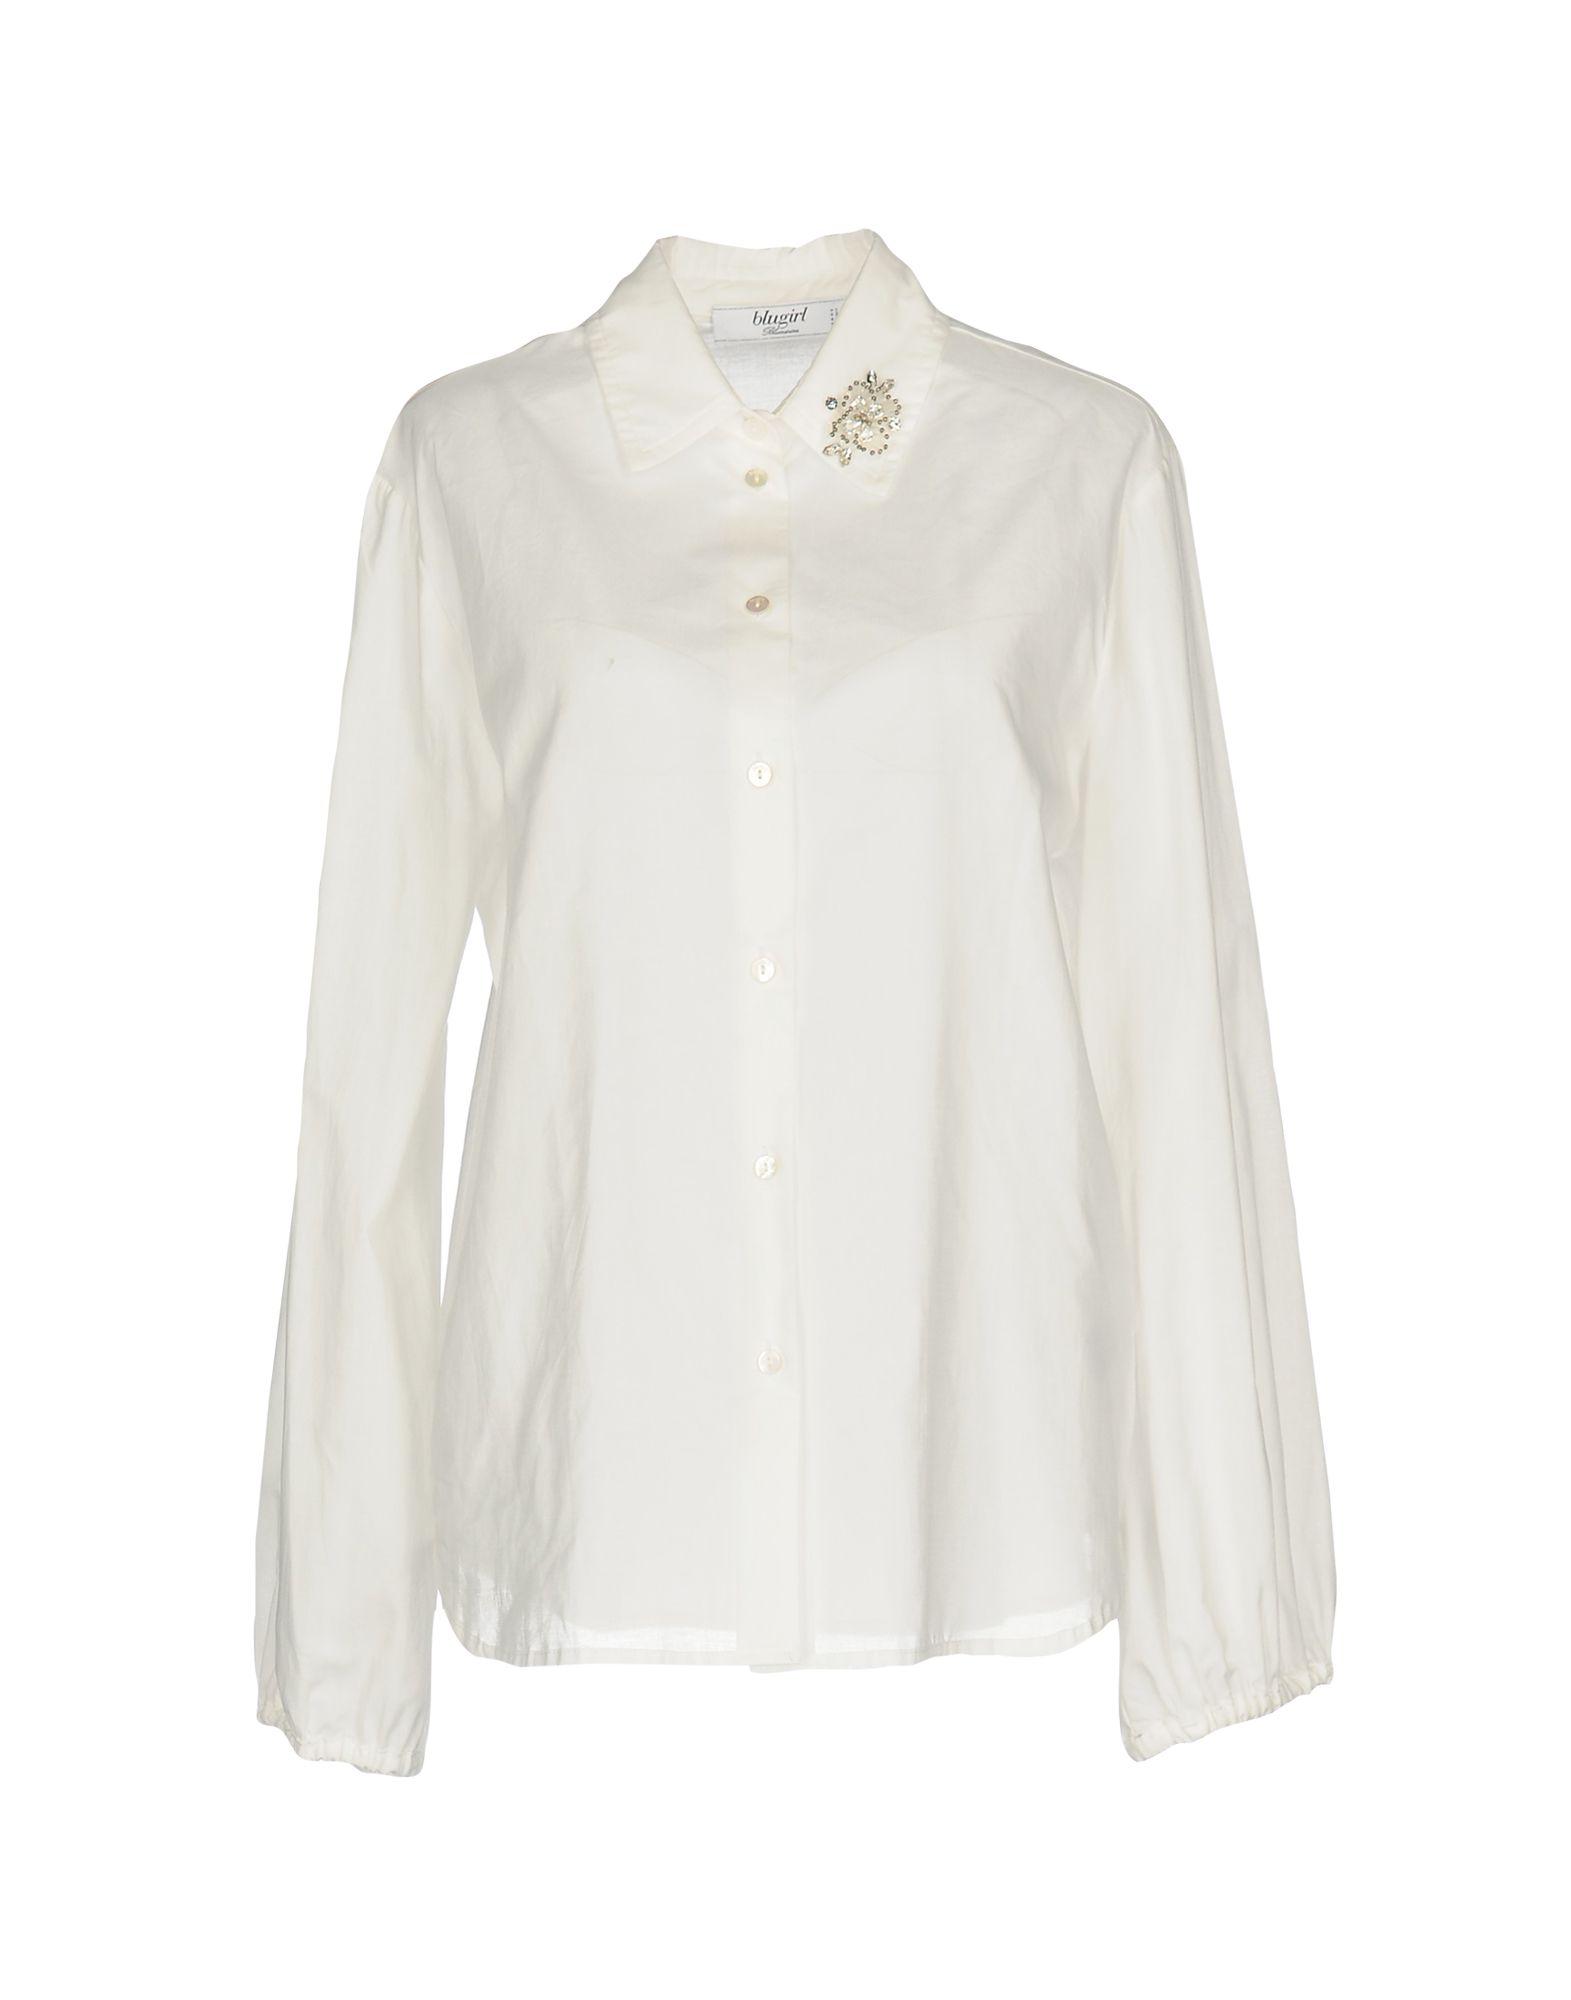 Blugirl Blumarine Cotton Shirt in White - Lyst